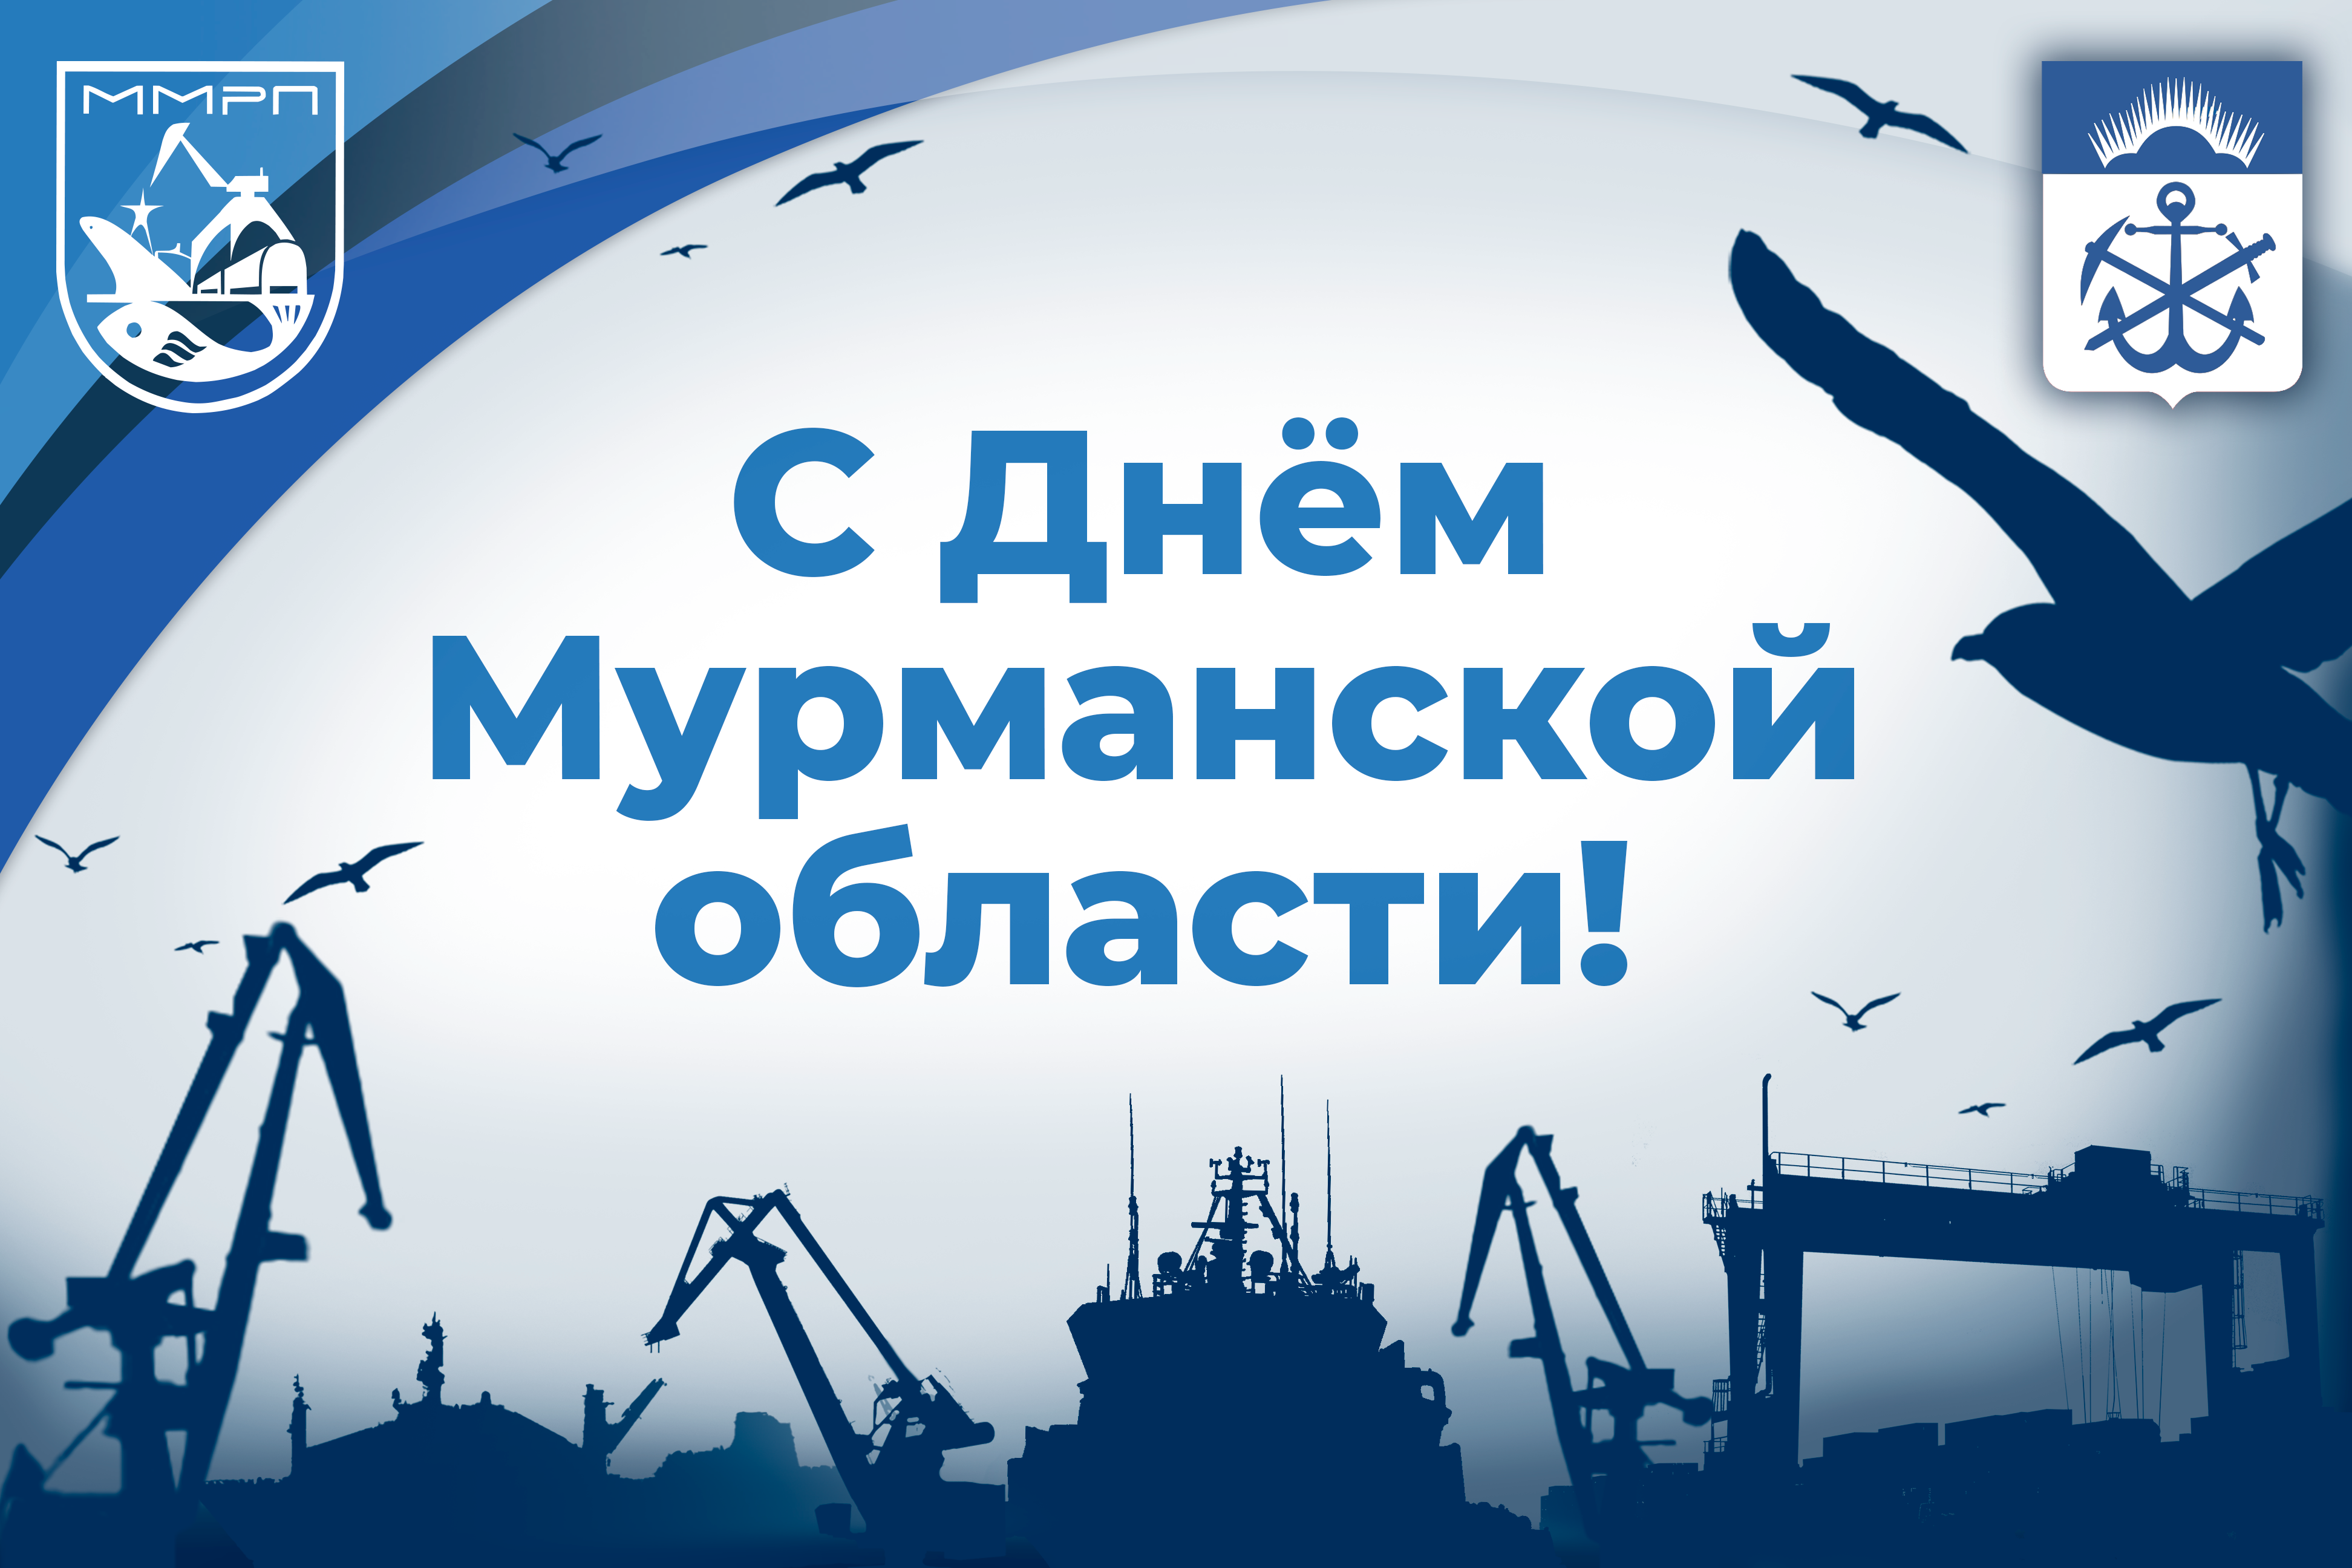 «Мурманский морской рыбный порт» поздравляет с днем основания Мурманской области